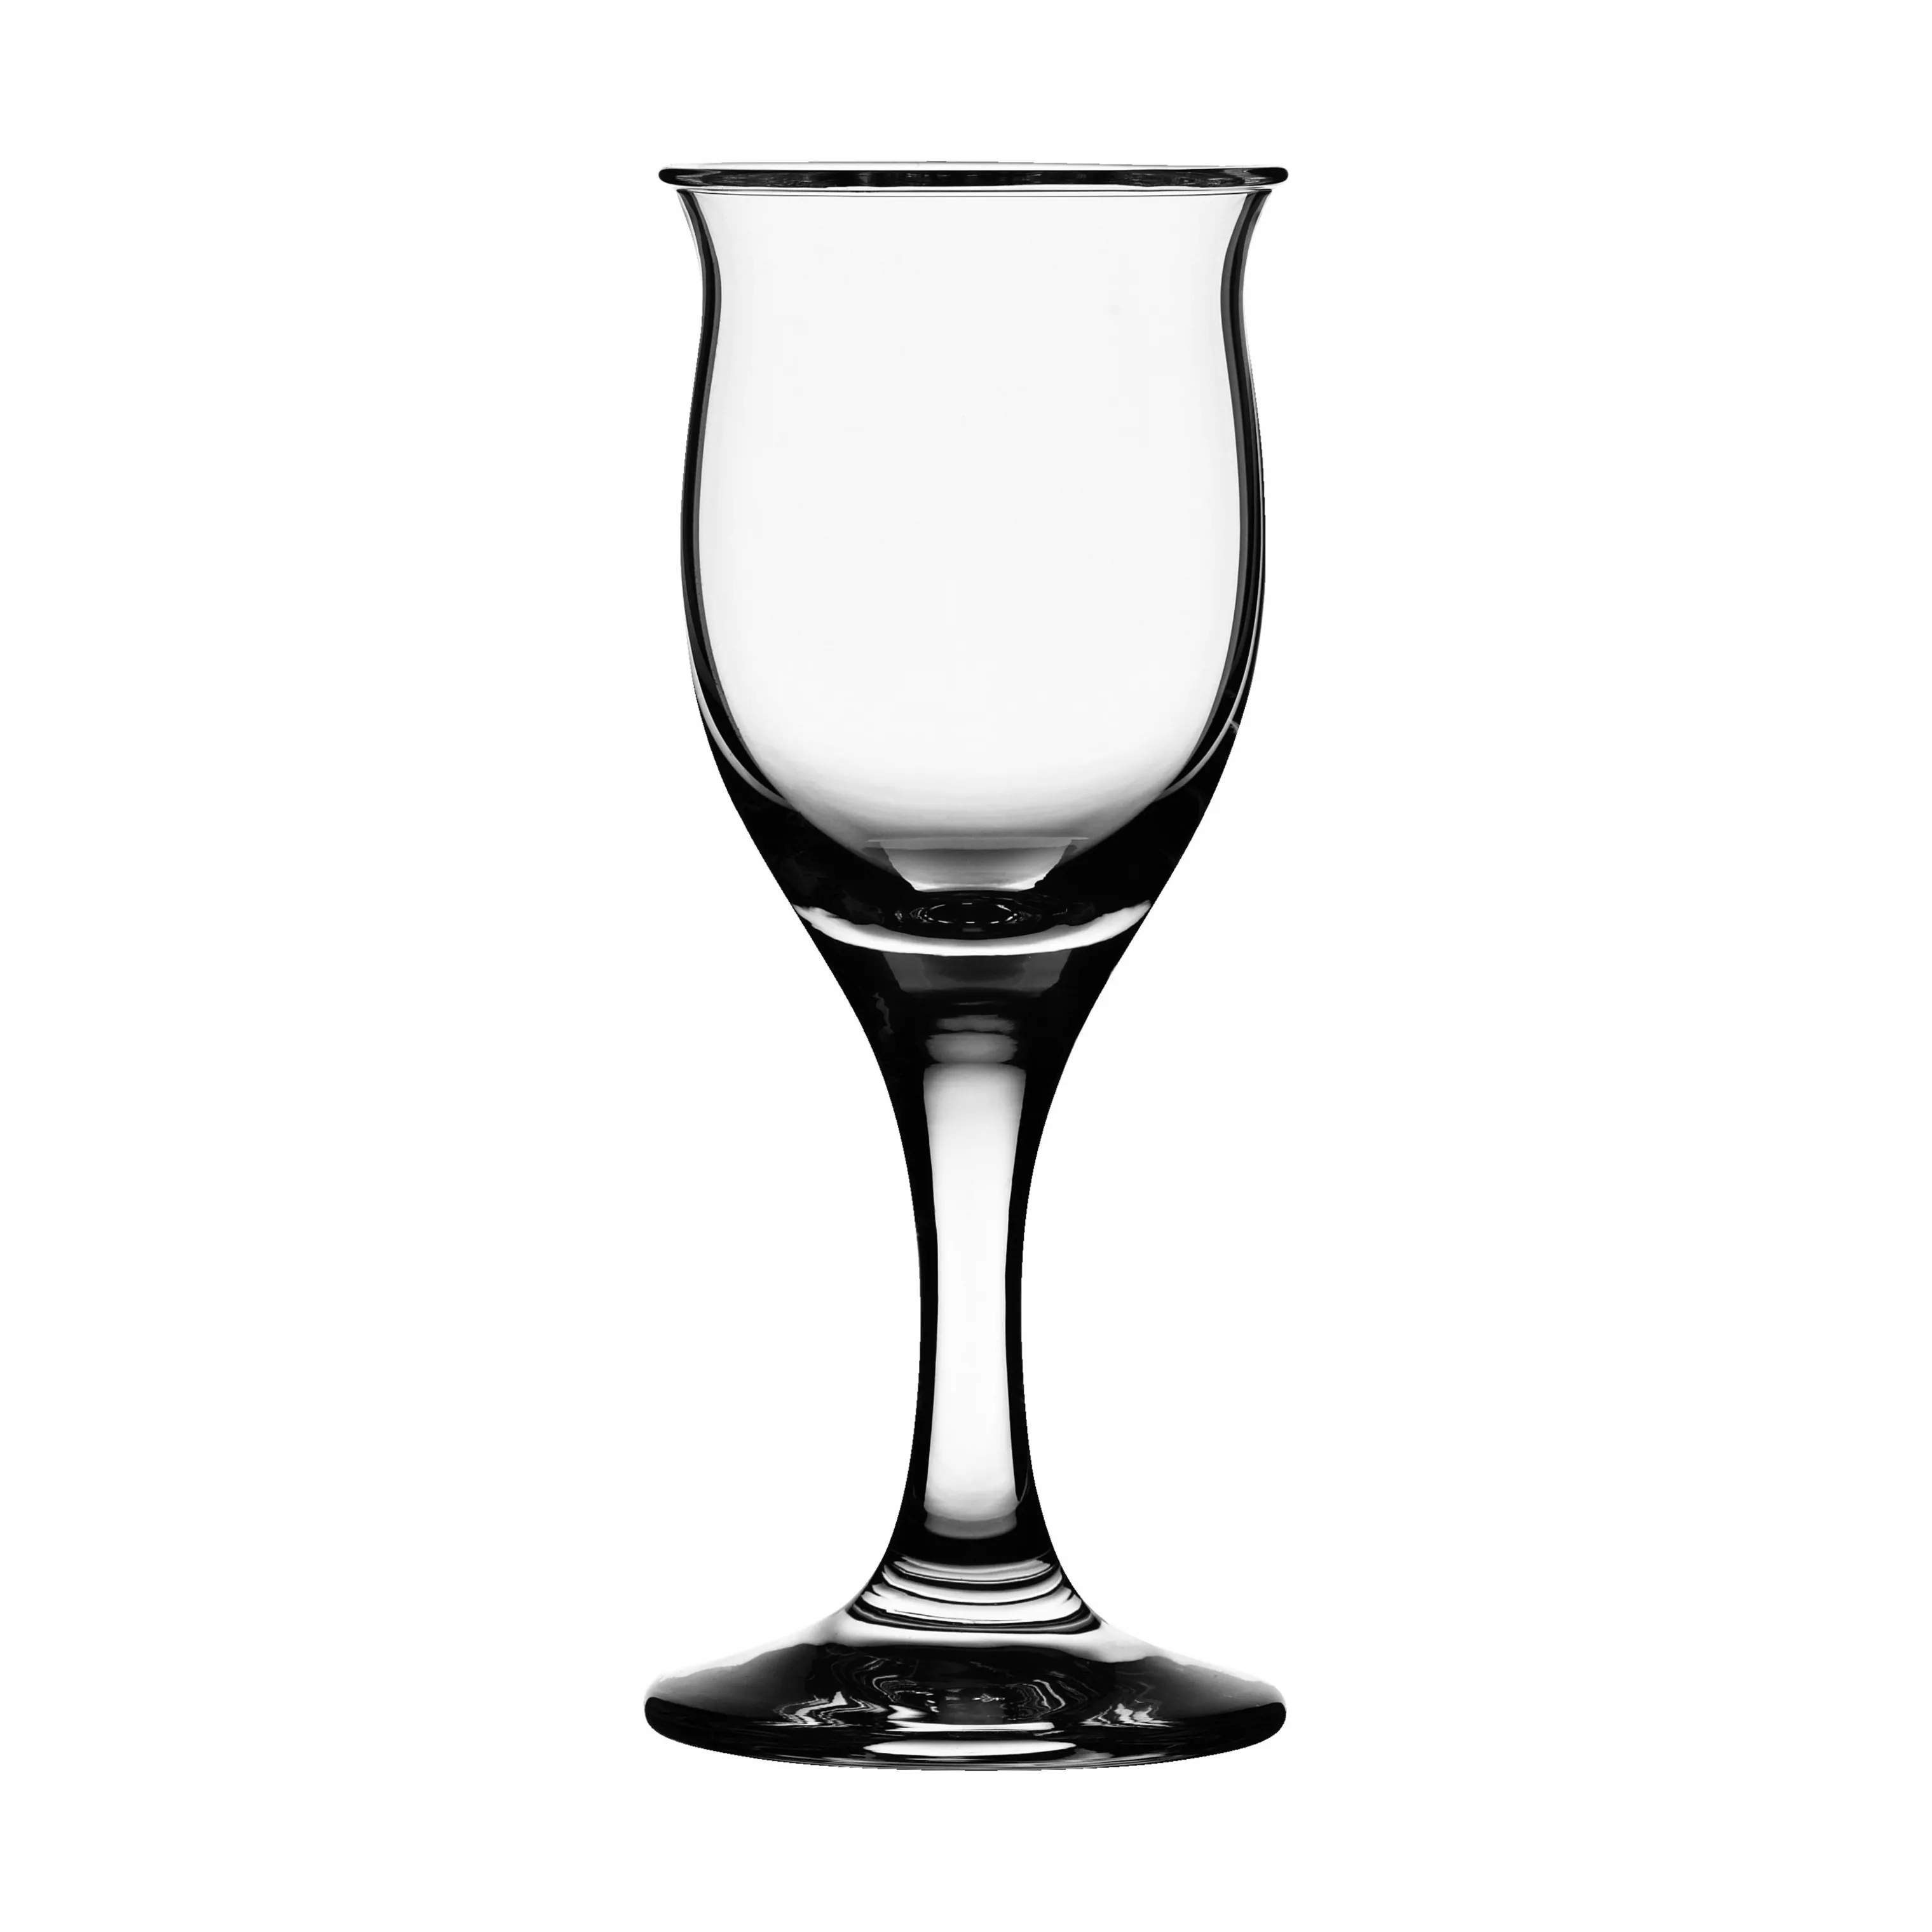 Holmegaard rødvinsglas Idéelle Rødvinsglas